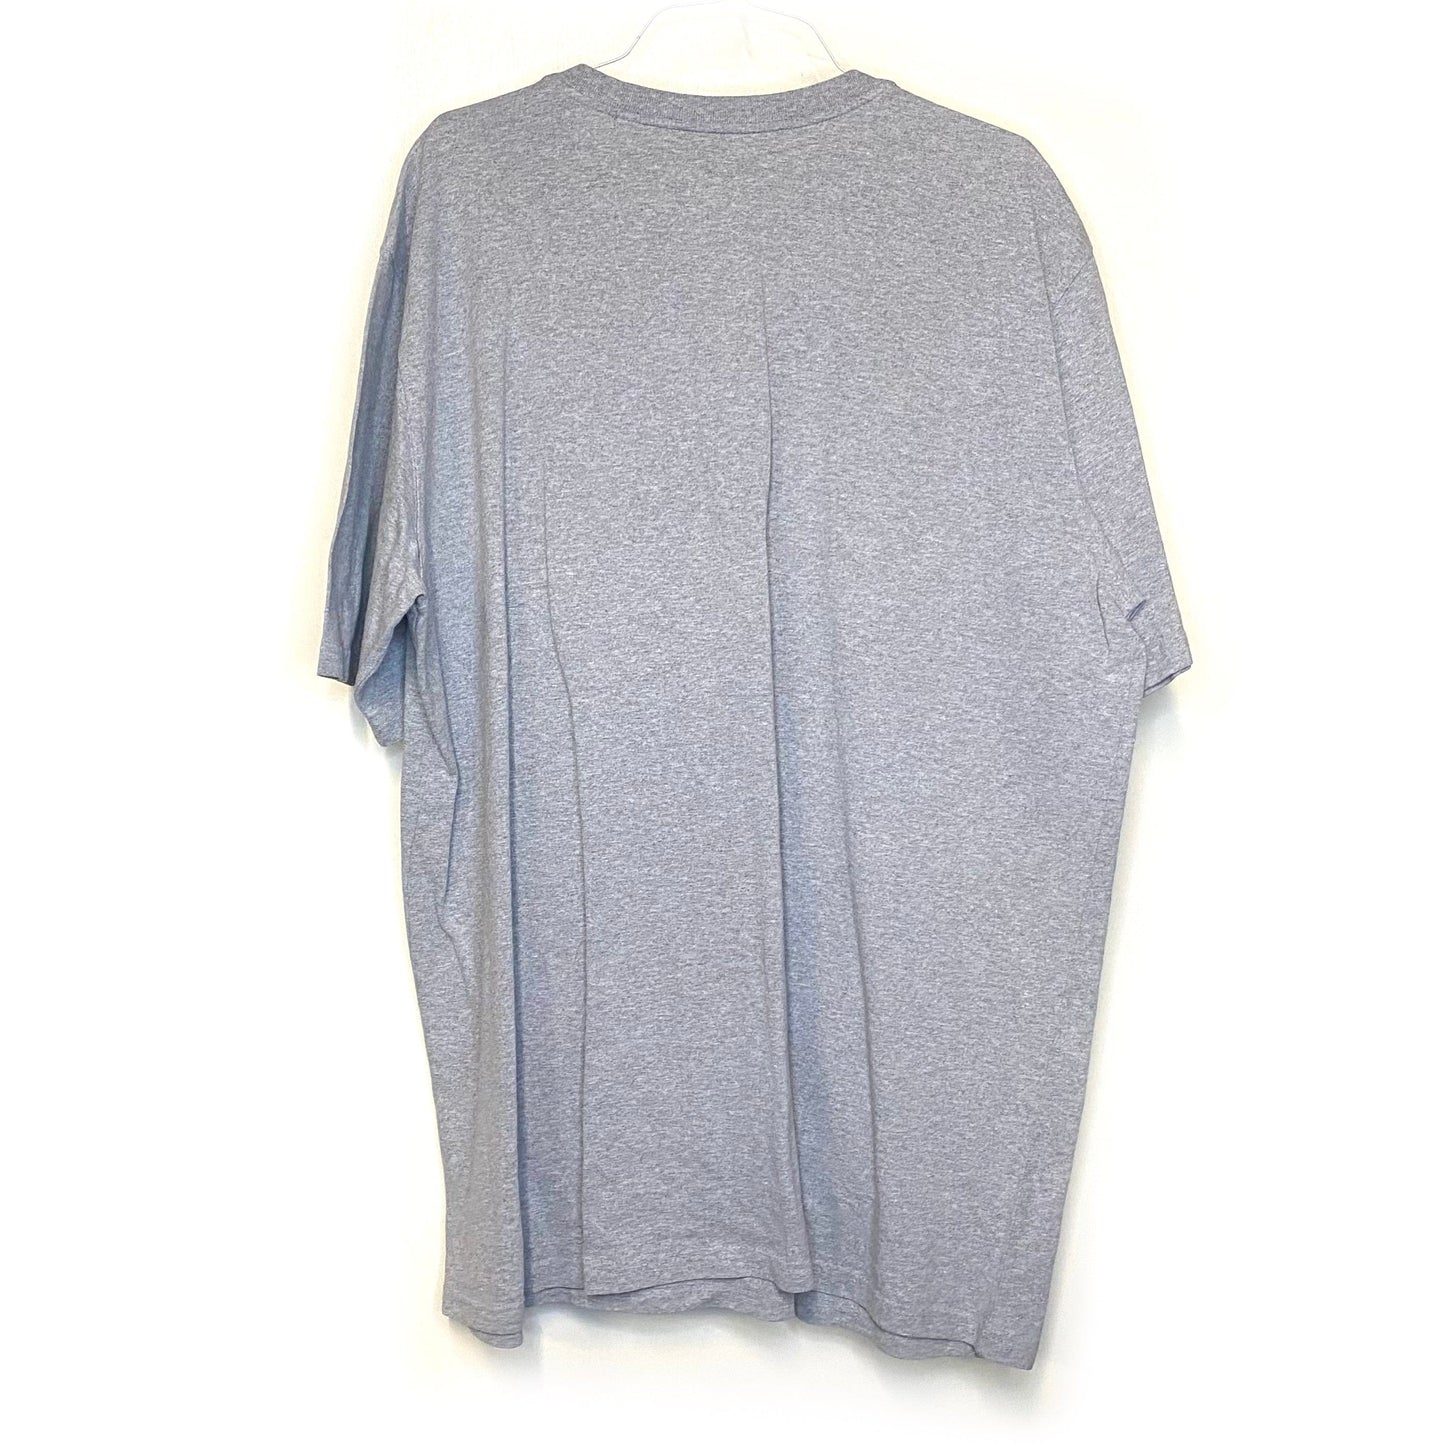 Carhartt Mens Size 3XL Tall Gray Short Sleeve Henley T-Shirt